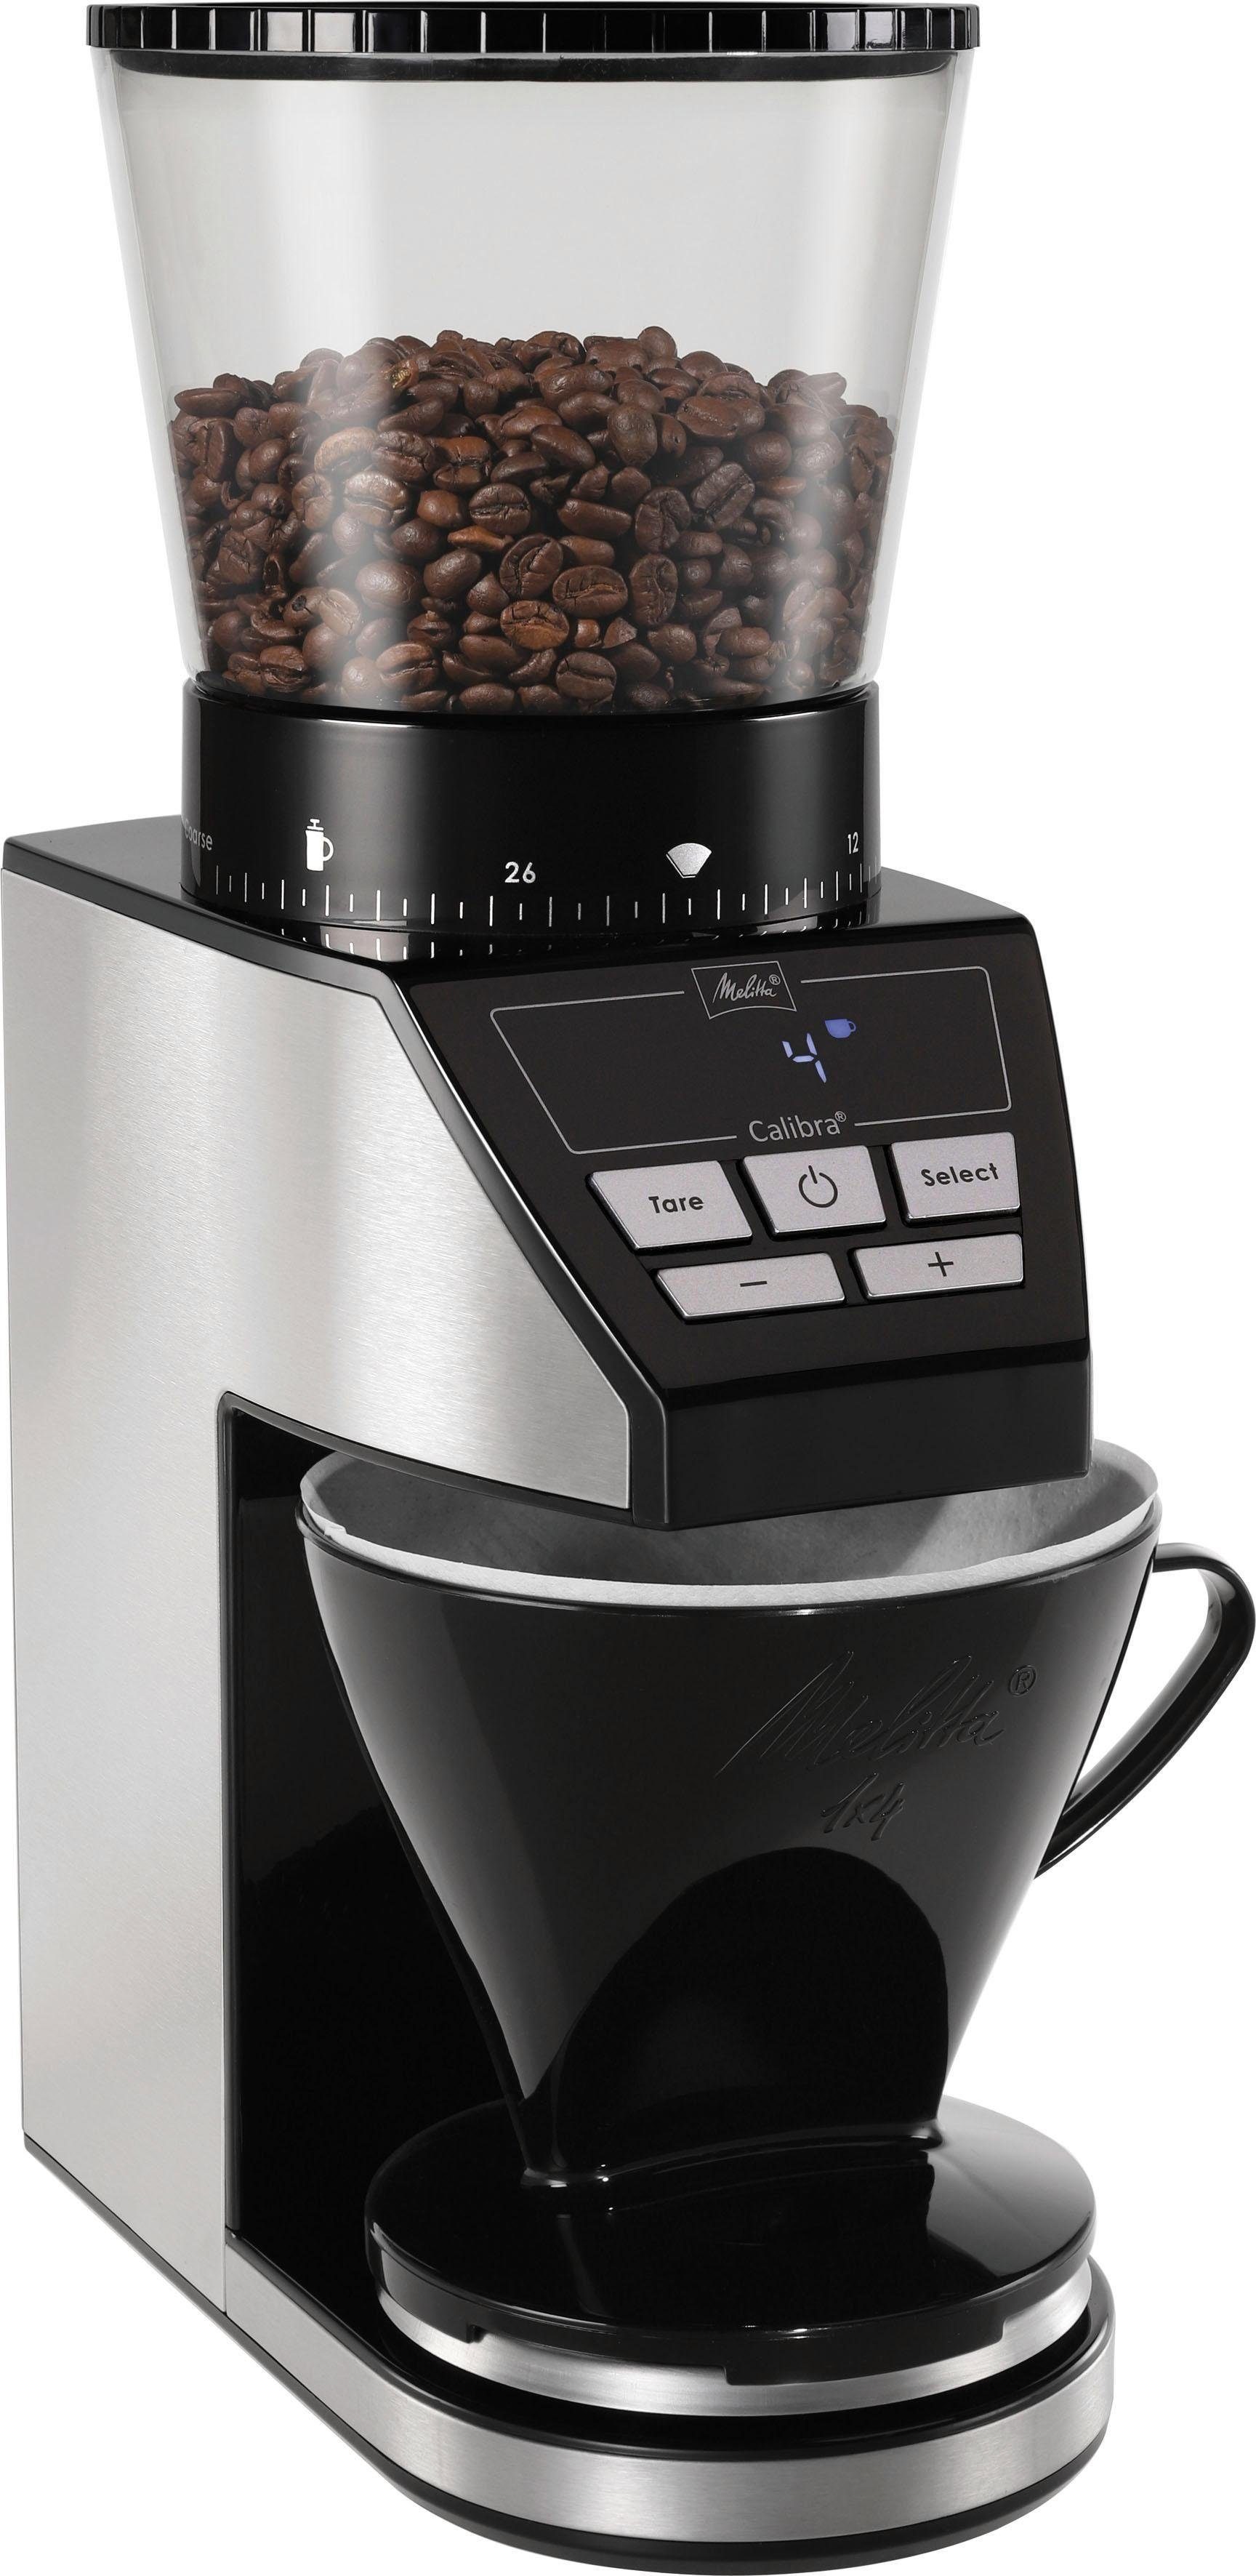 Melitta Kaffeemühle Calibra 1027-01 schwarz-Edelstahl, W, g Kegelmahlwerk, 160 375 Bohnenbehälter